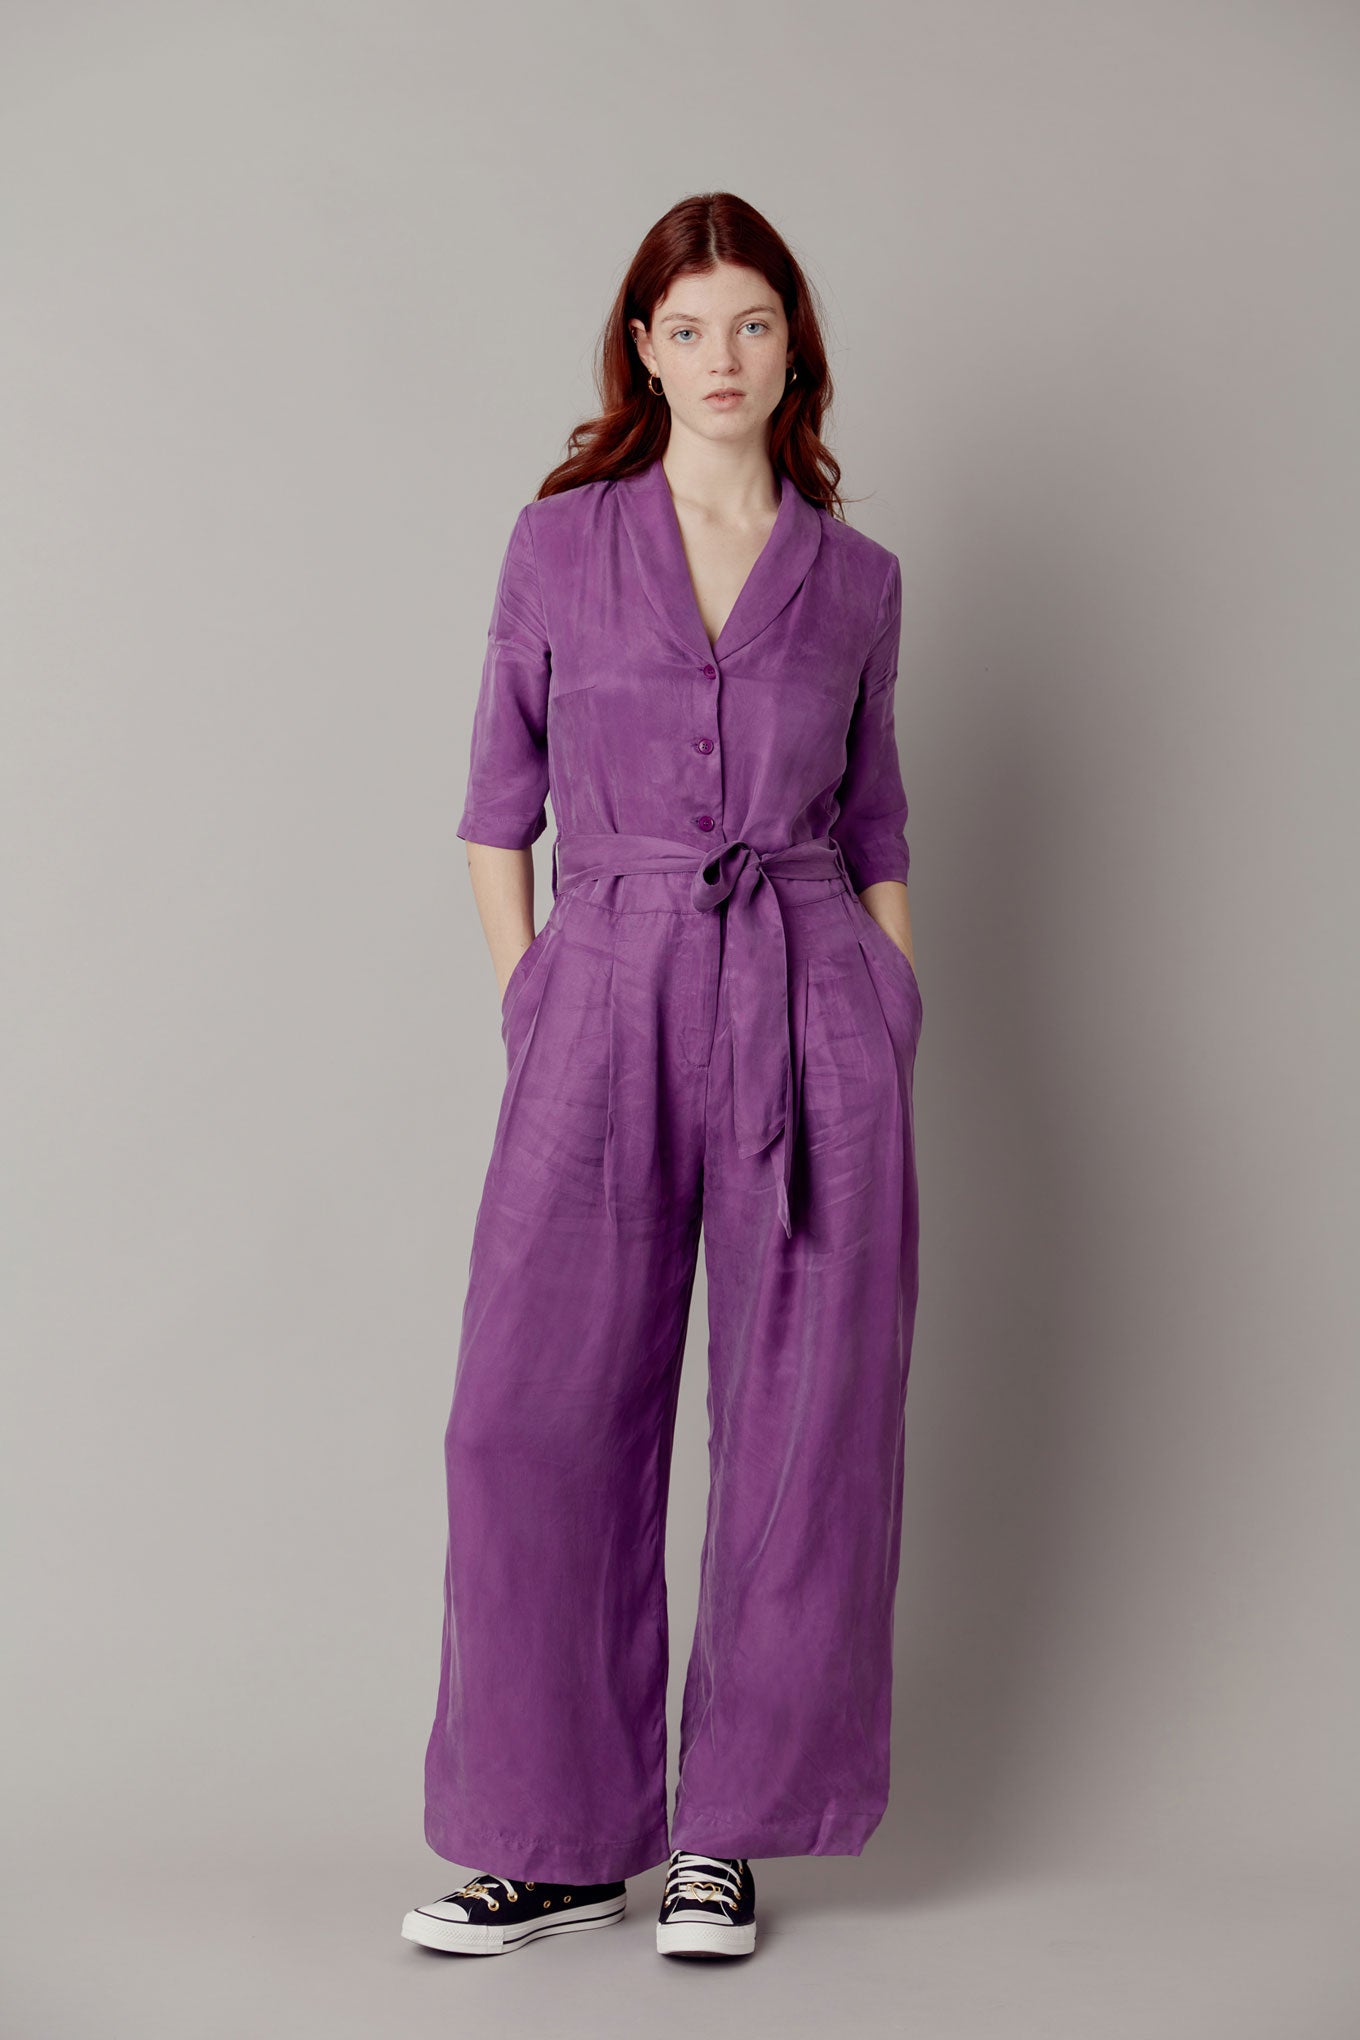 PLANET Cupro Jumpsuit - Purple, SIZE 1 / UK 8 / EUR 36